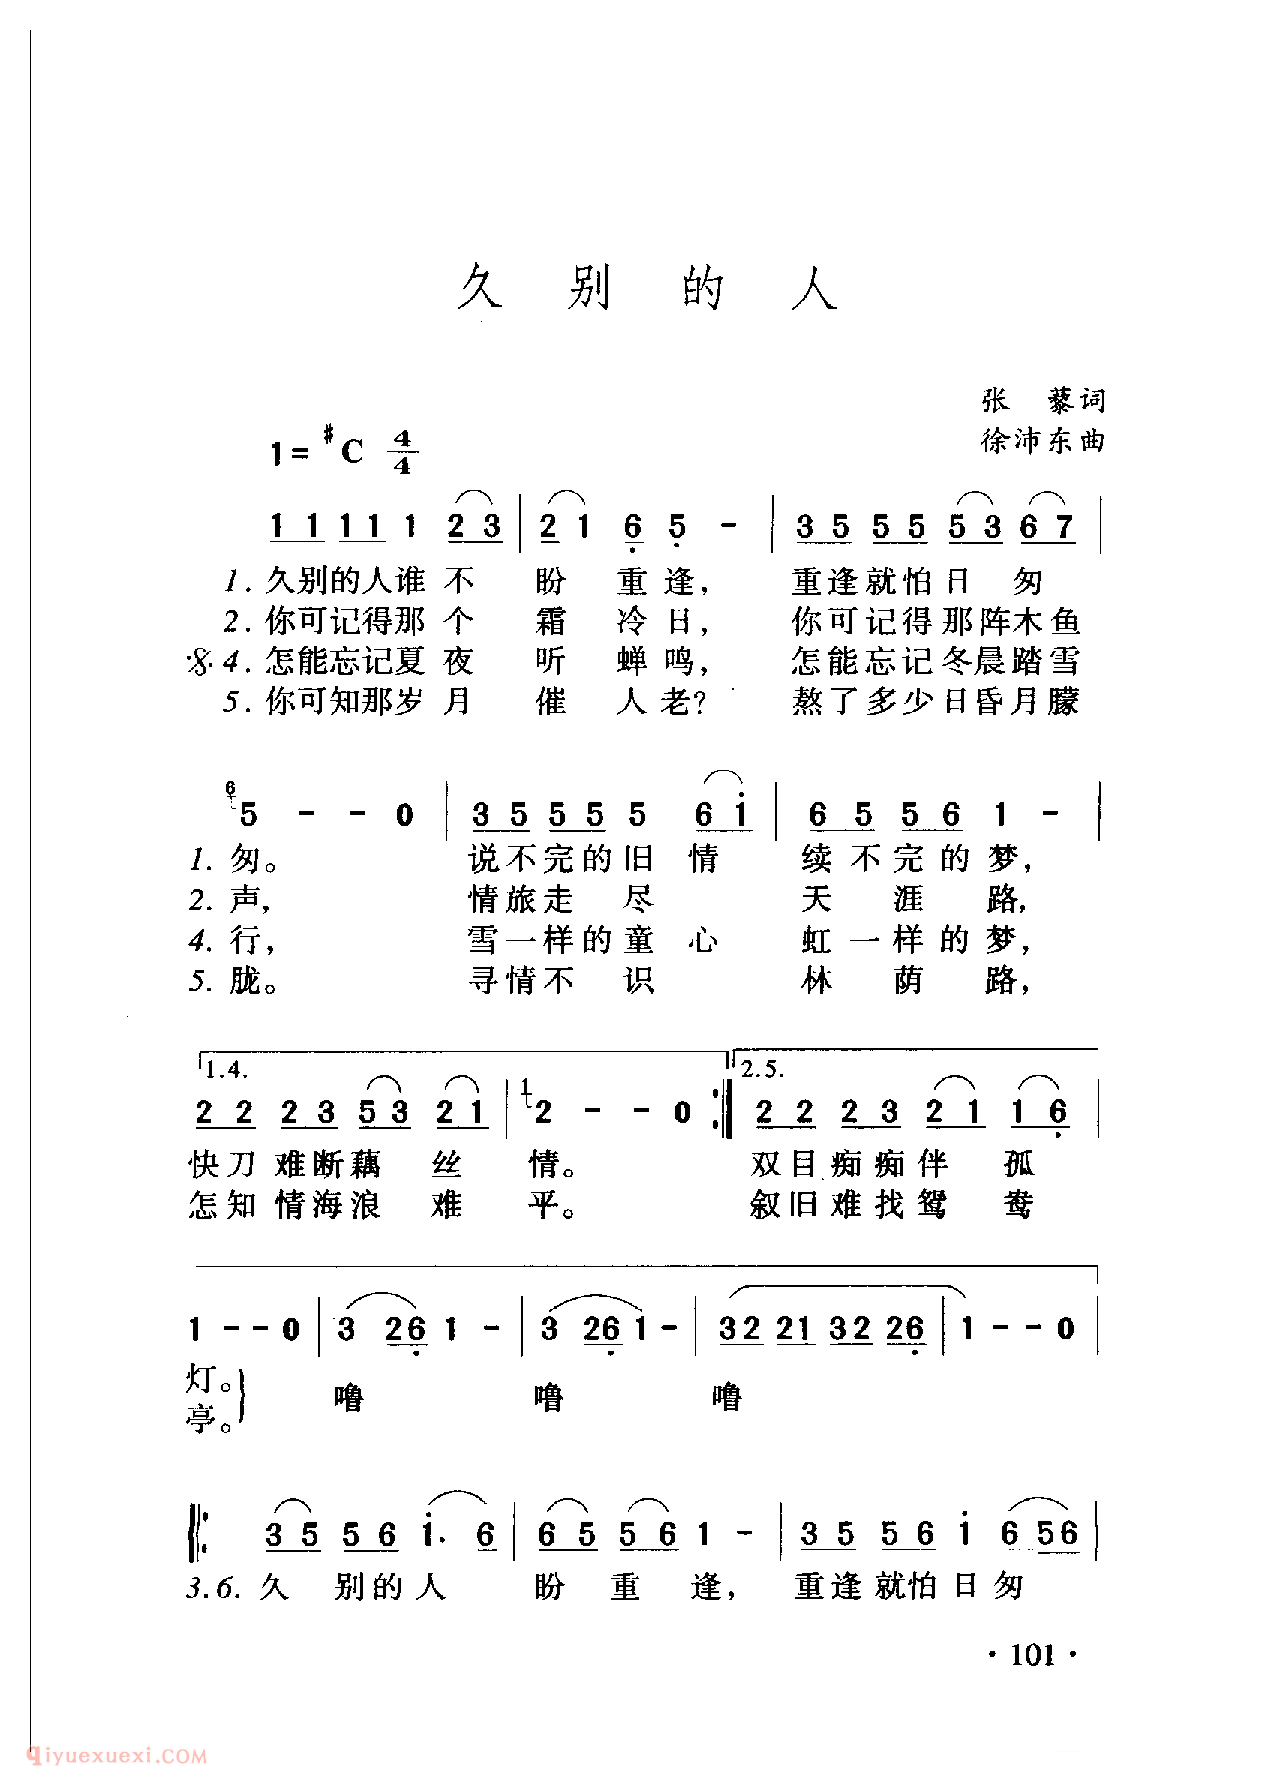 中国名歌[久别的人]乐谱